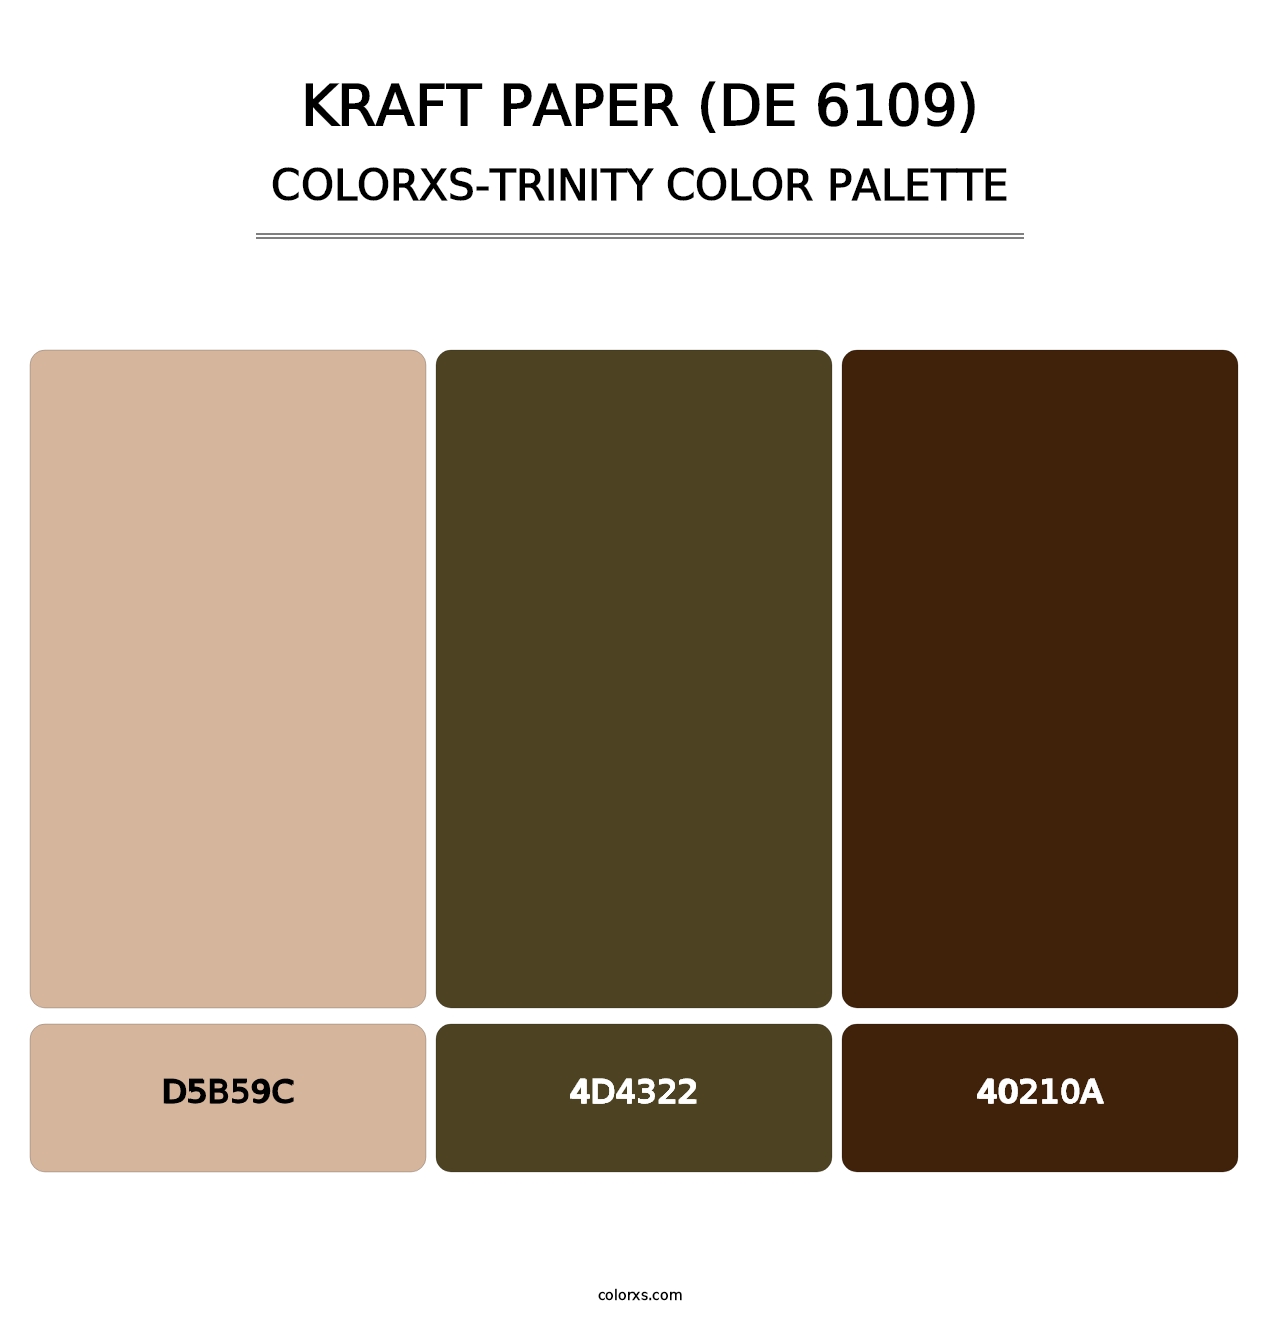 Kraft Paper (DE 6109) - Colorxs Trinity Palette